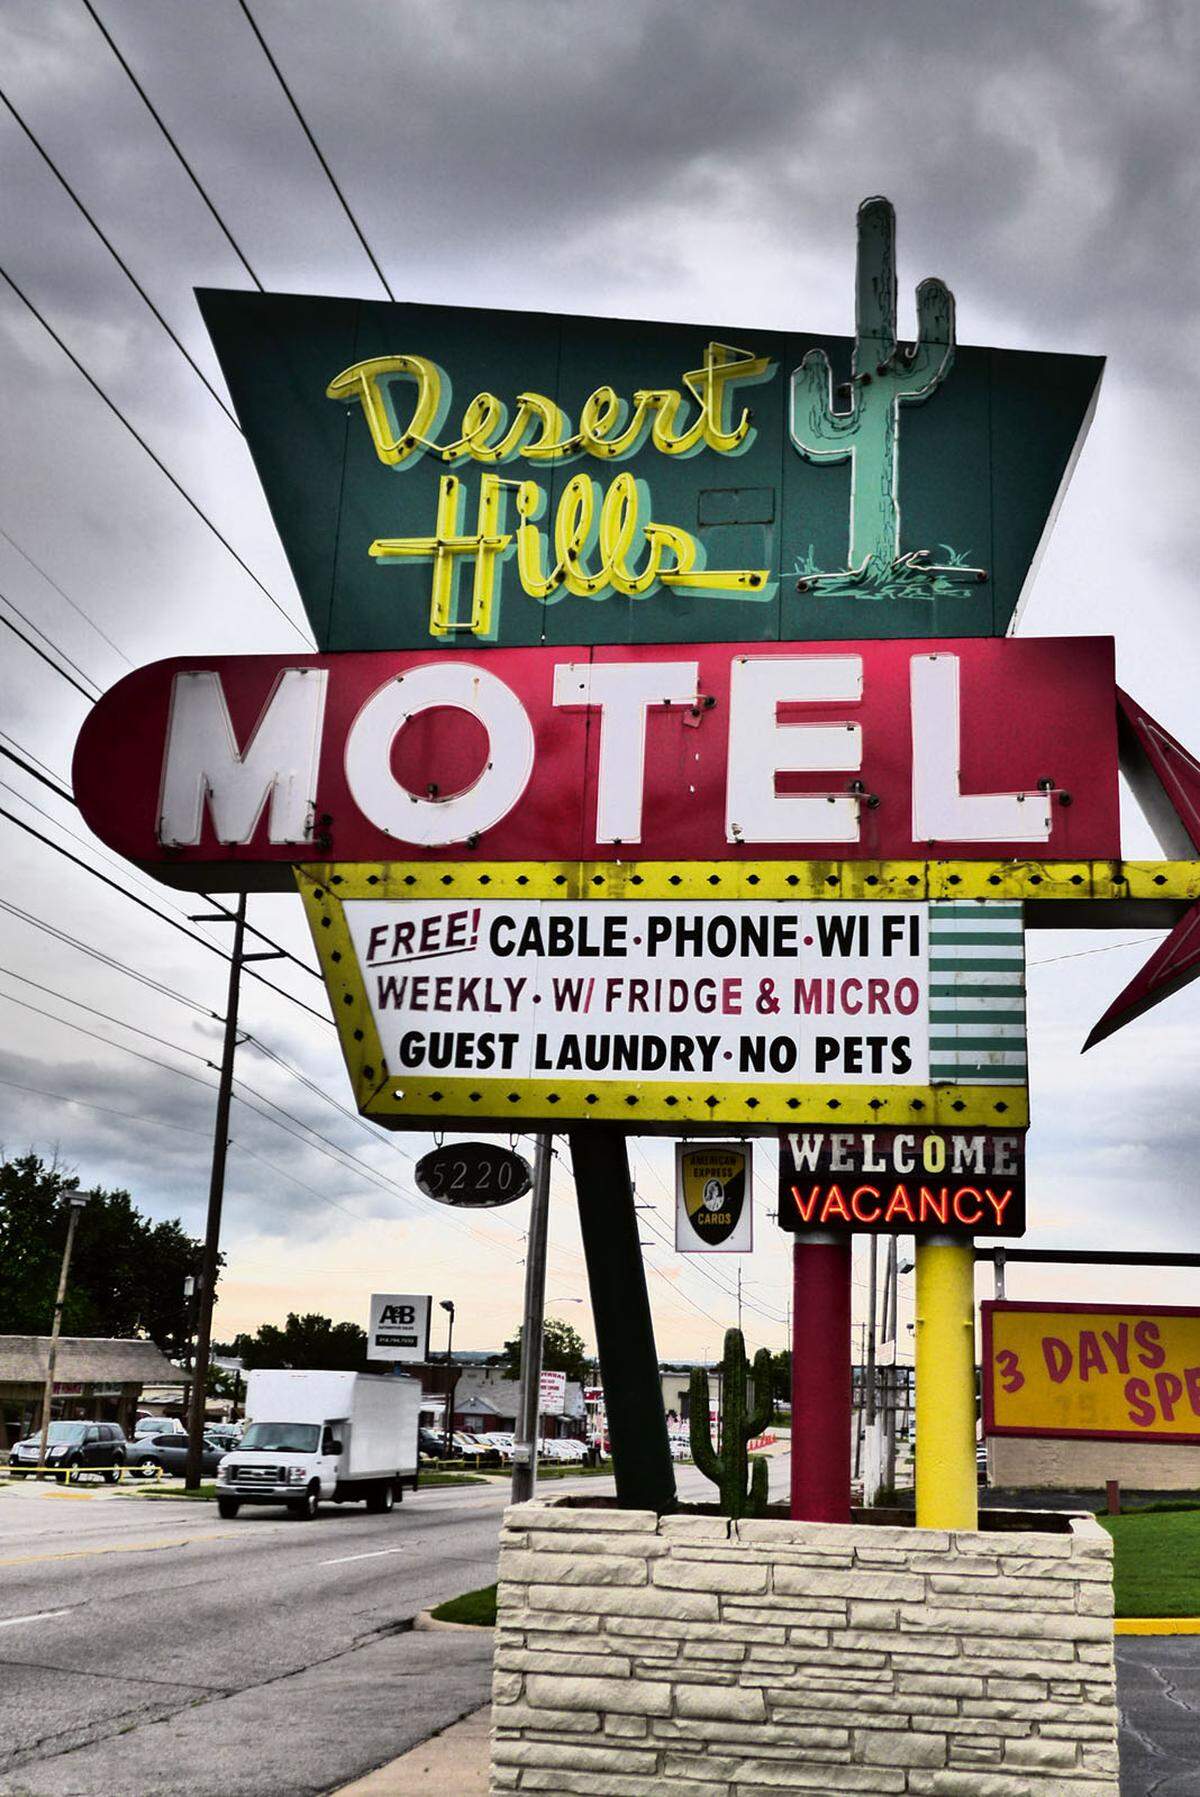 Oklahoma: In den seltensten Fällen wird auf die Architektur von Motels viel Phantasie verschwendet. Umso höher ist der Anspruch an Werbeschilder und Beleuchtung, wie hier in Tulsa.